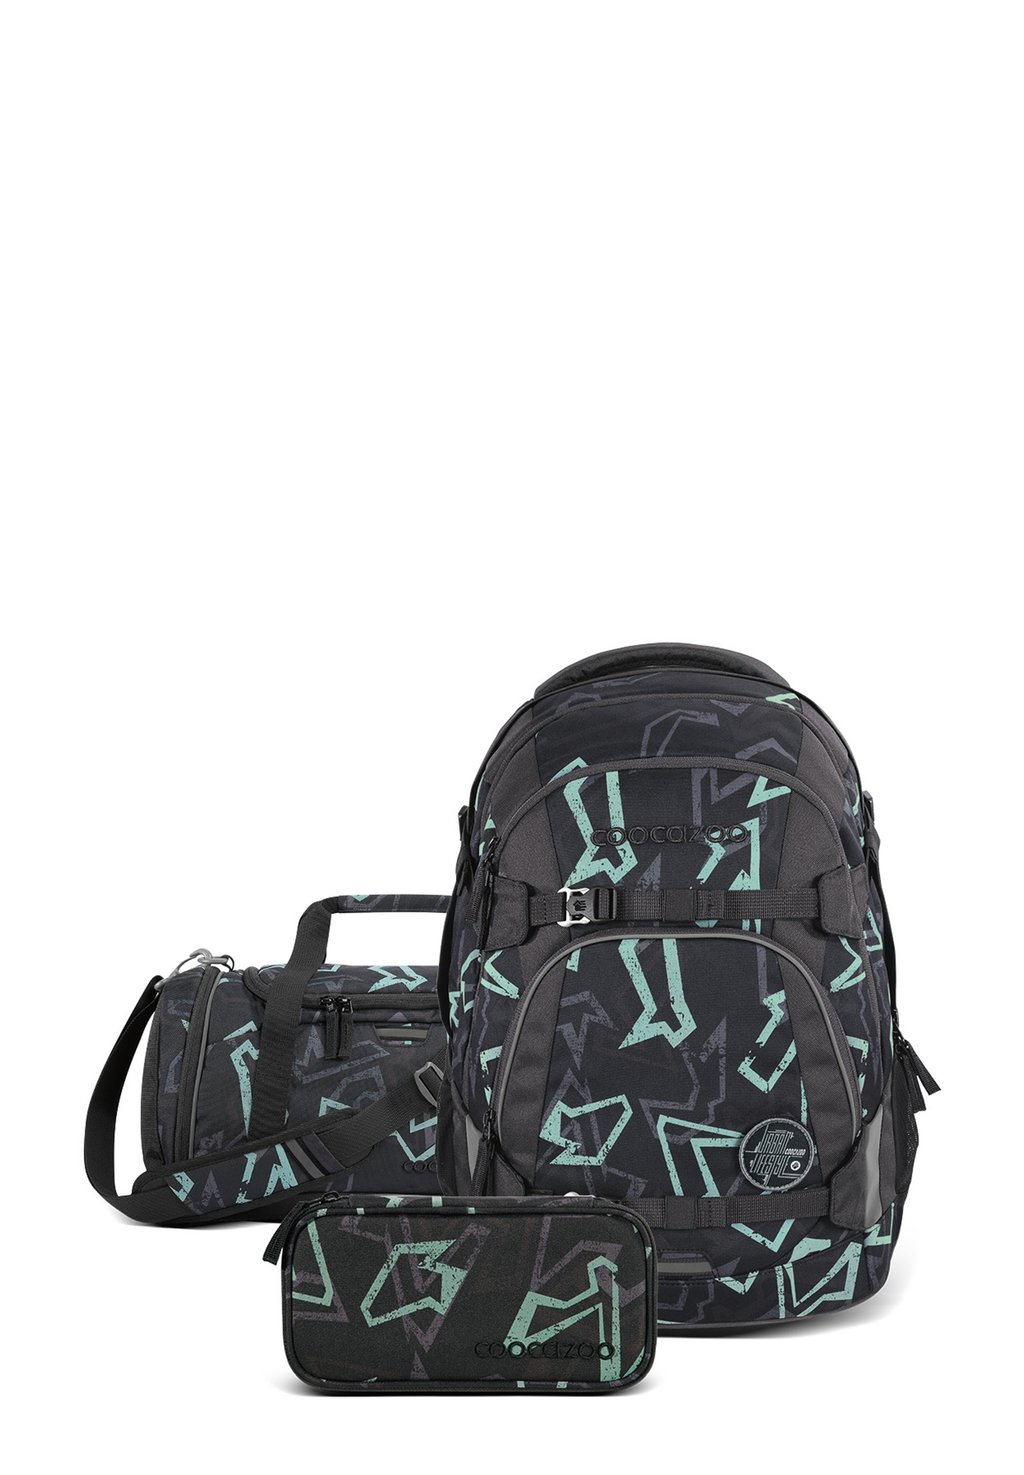 Комплект школьных сумок REFLECTIVE GRAFFITI coocazoo, цвет schwarz